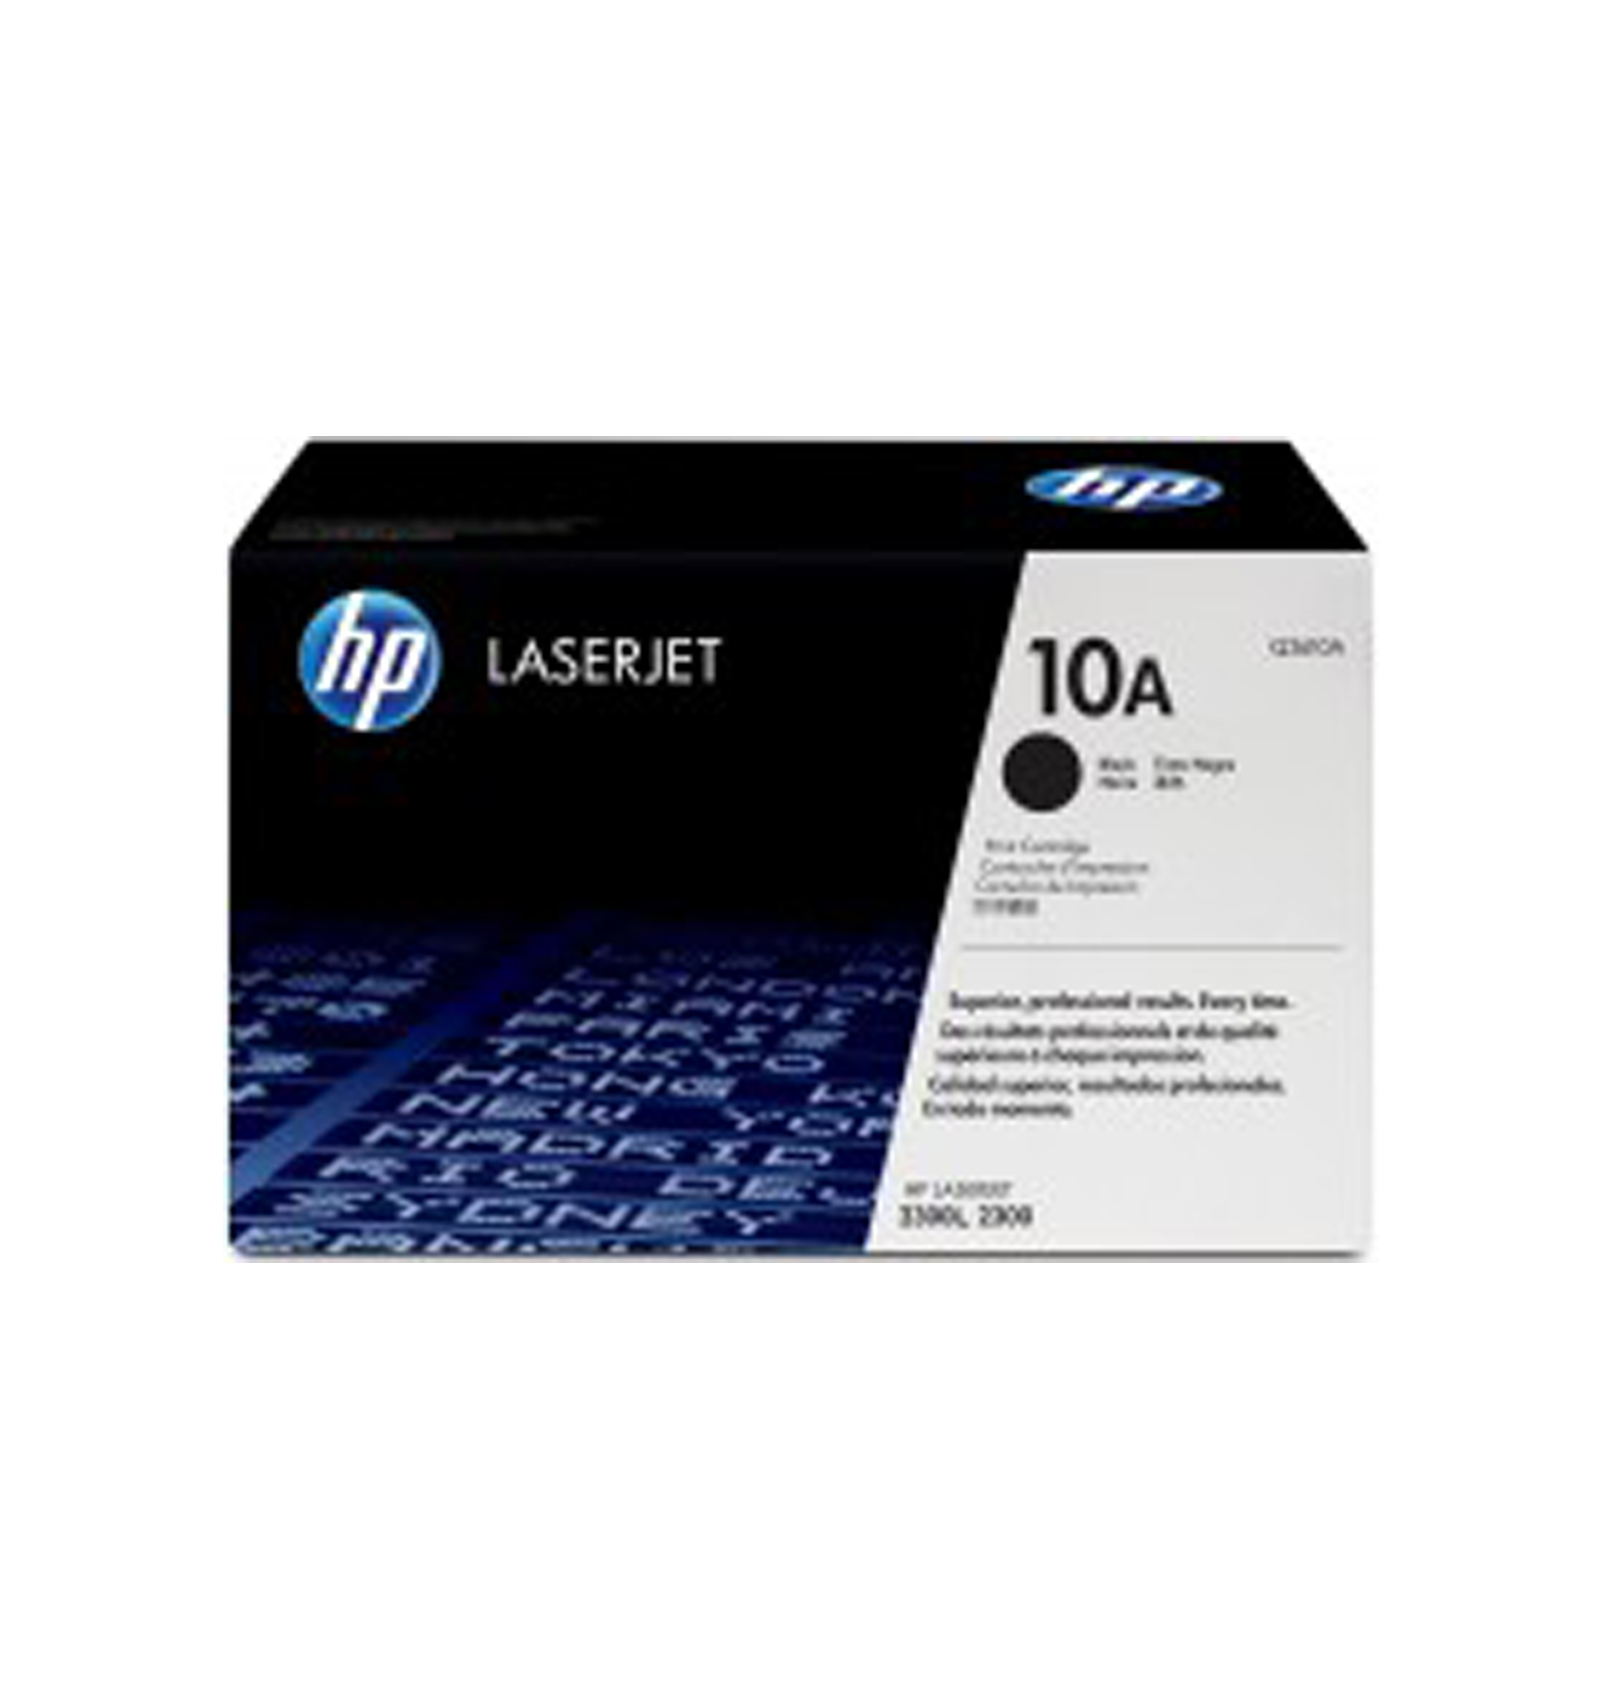 HP Q2610A (10A) для LaserJet 2300